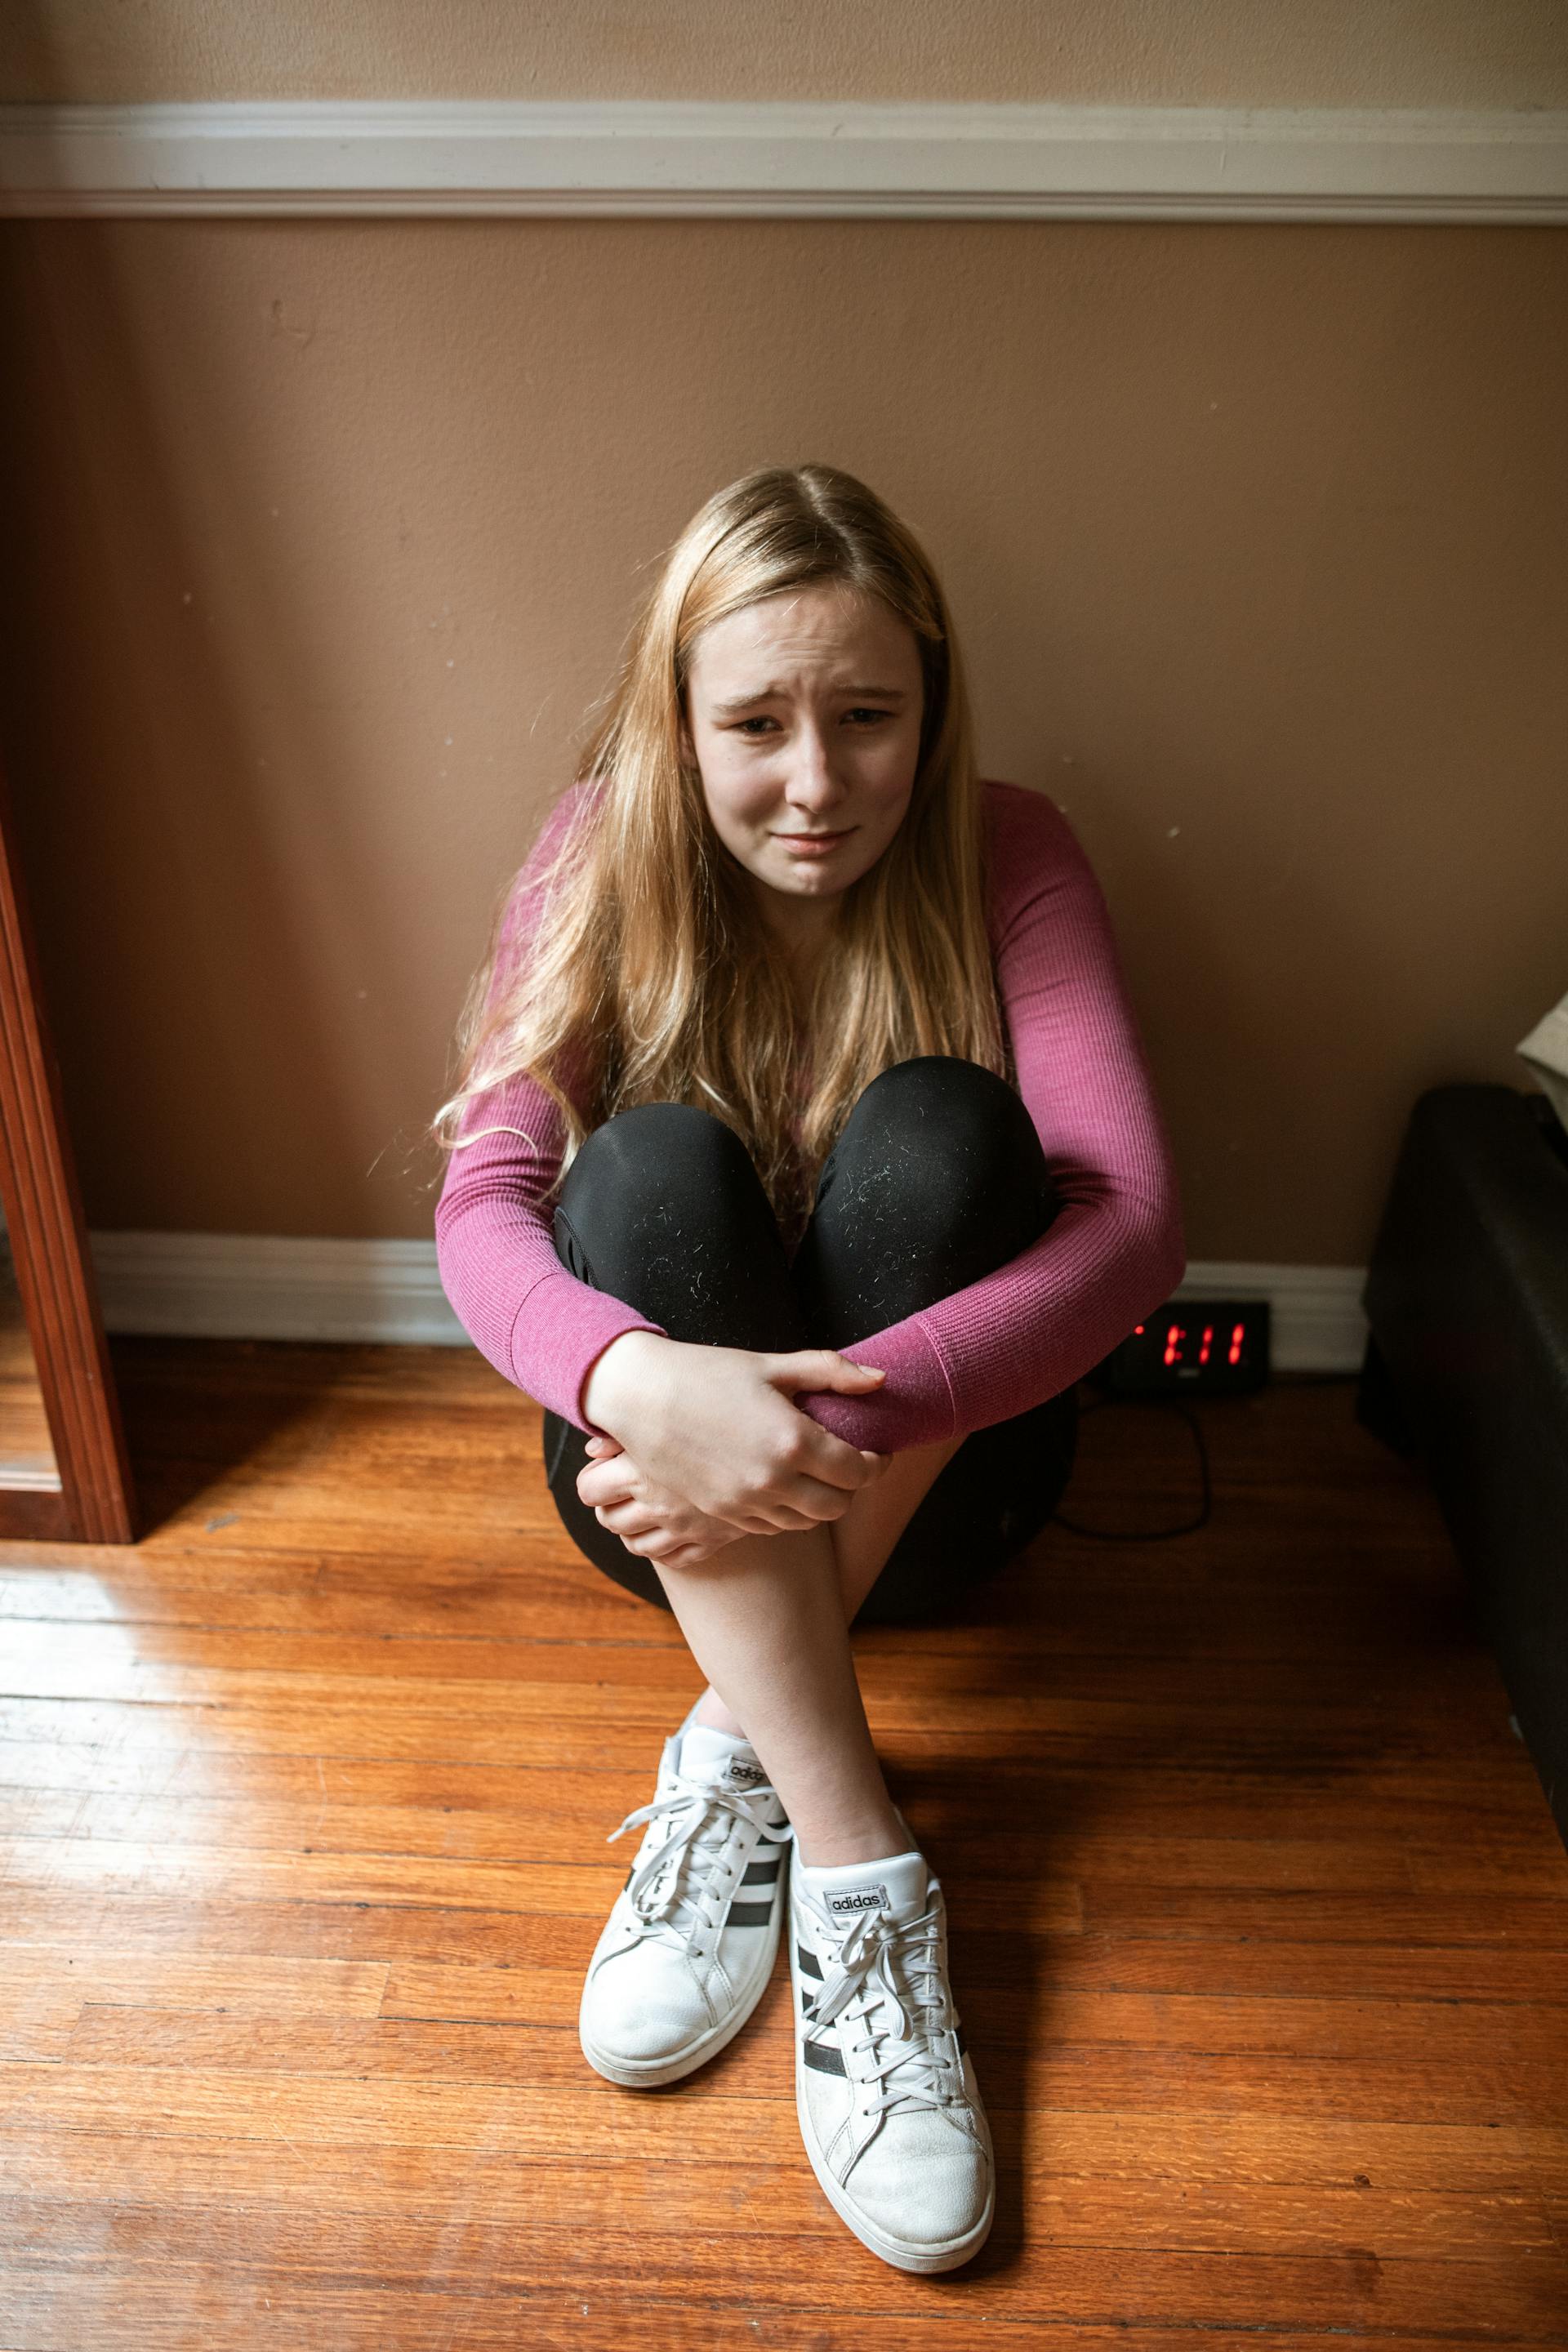 Una joven adolescente sentada en el suelo y llorando | Fuente: Pexels